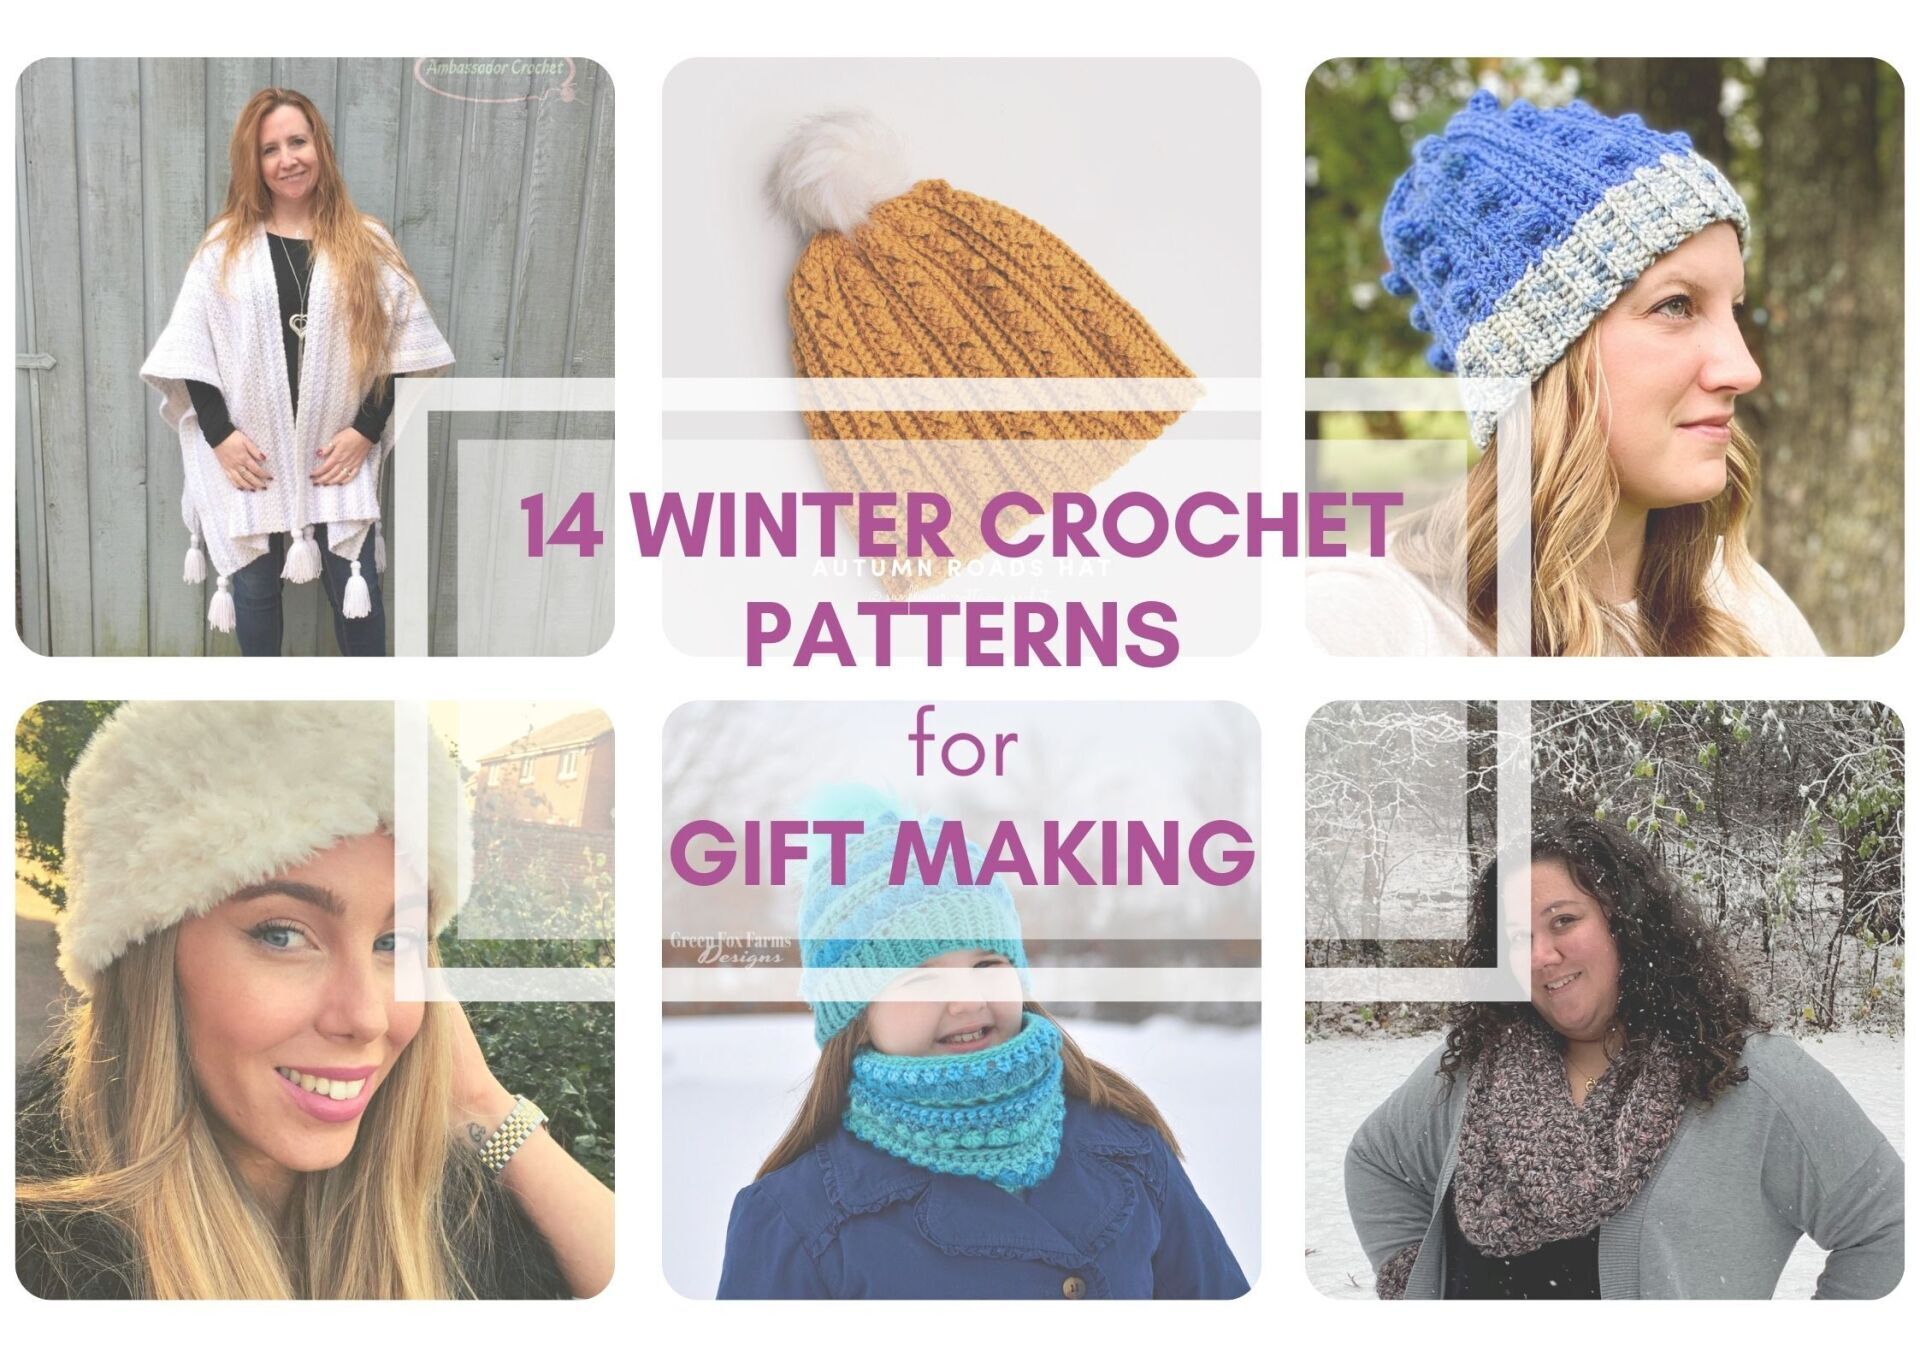 14 Winter Crochet Patterns for gift making